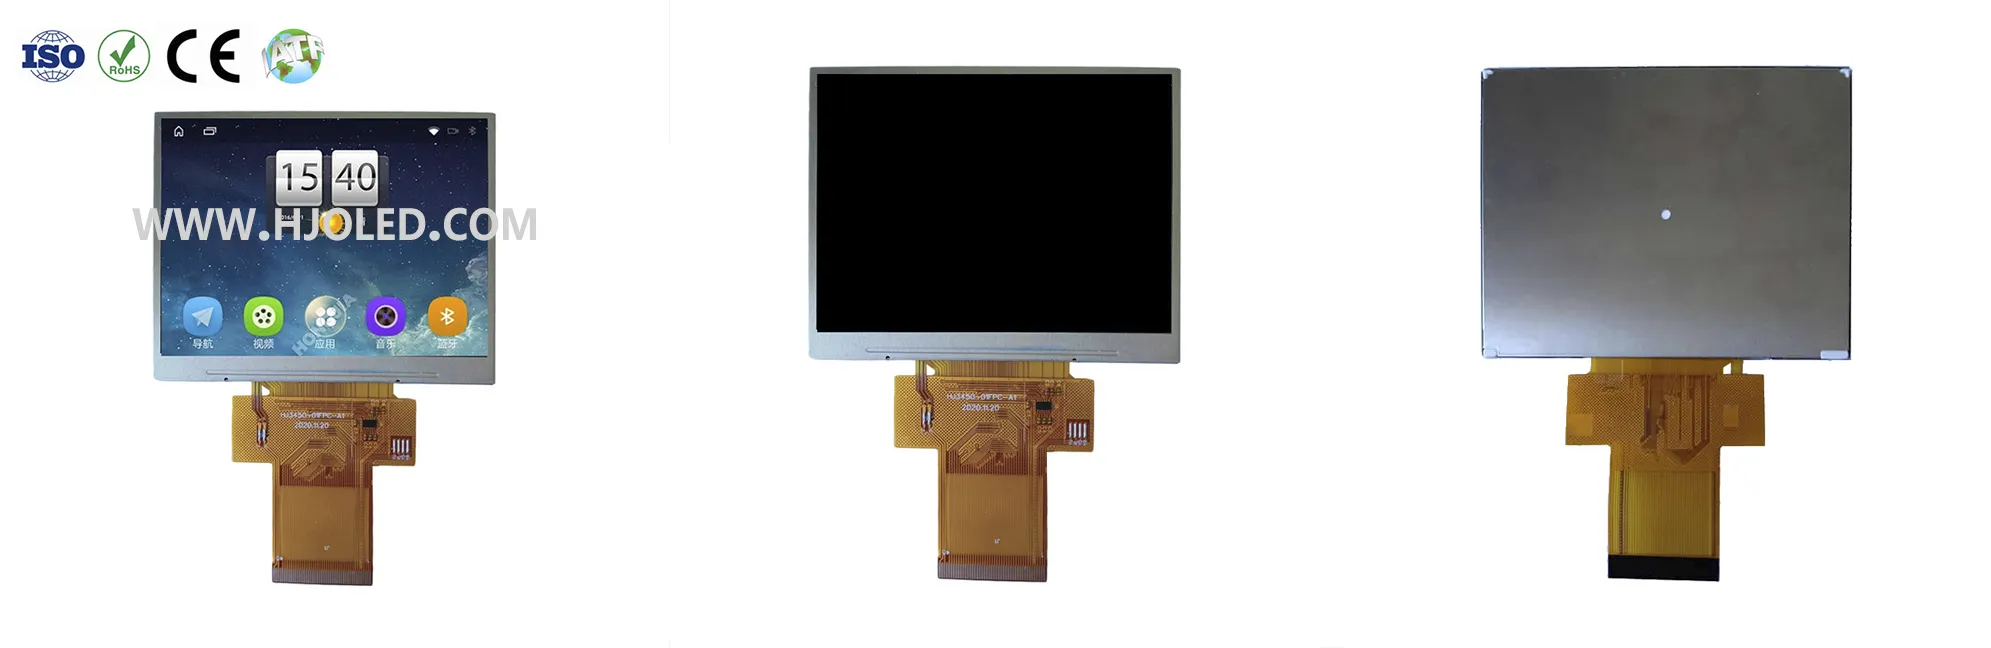 Quelles sont les résolutions courantes sur le marché des écrans LCD TFT de 3,5 pouces ?